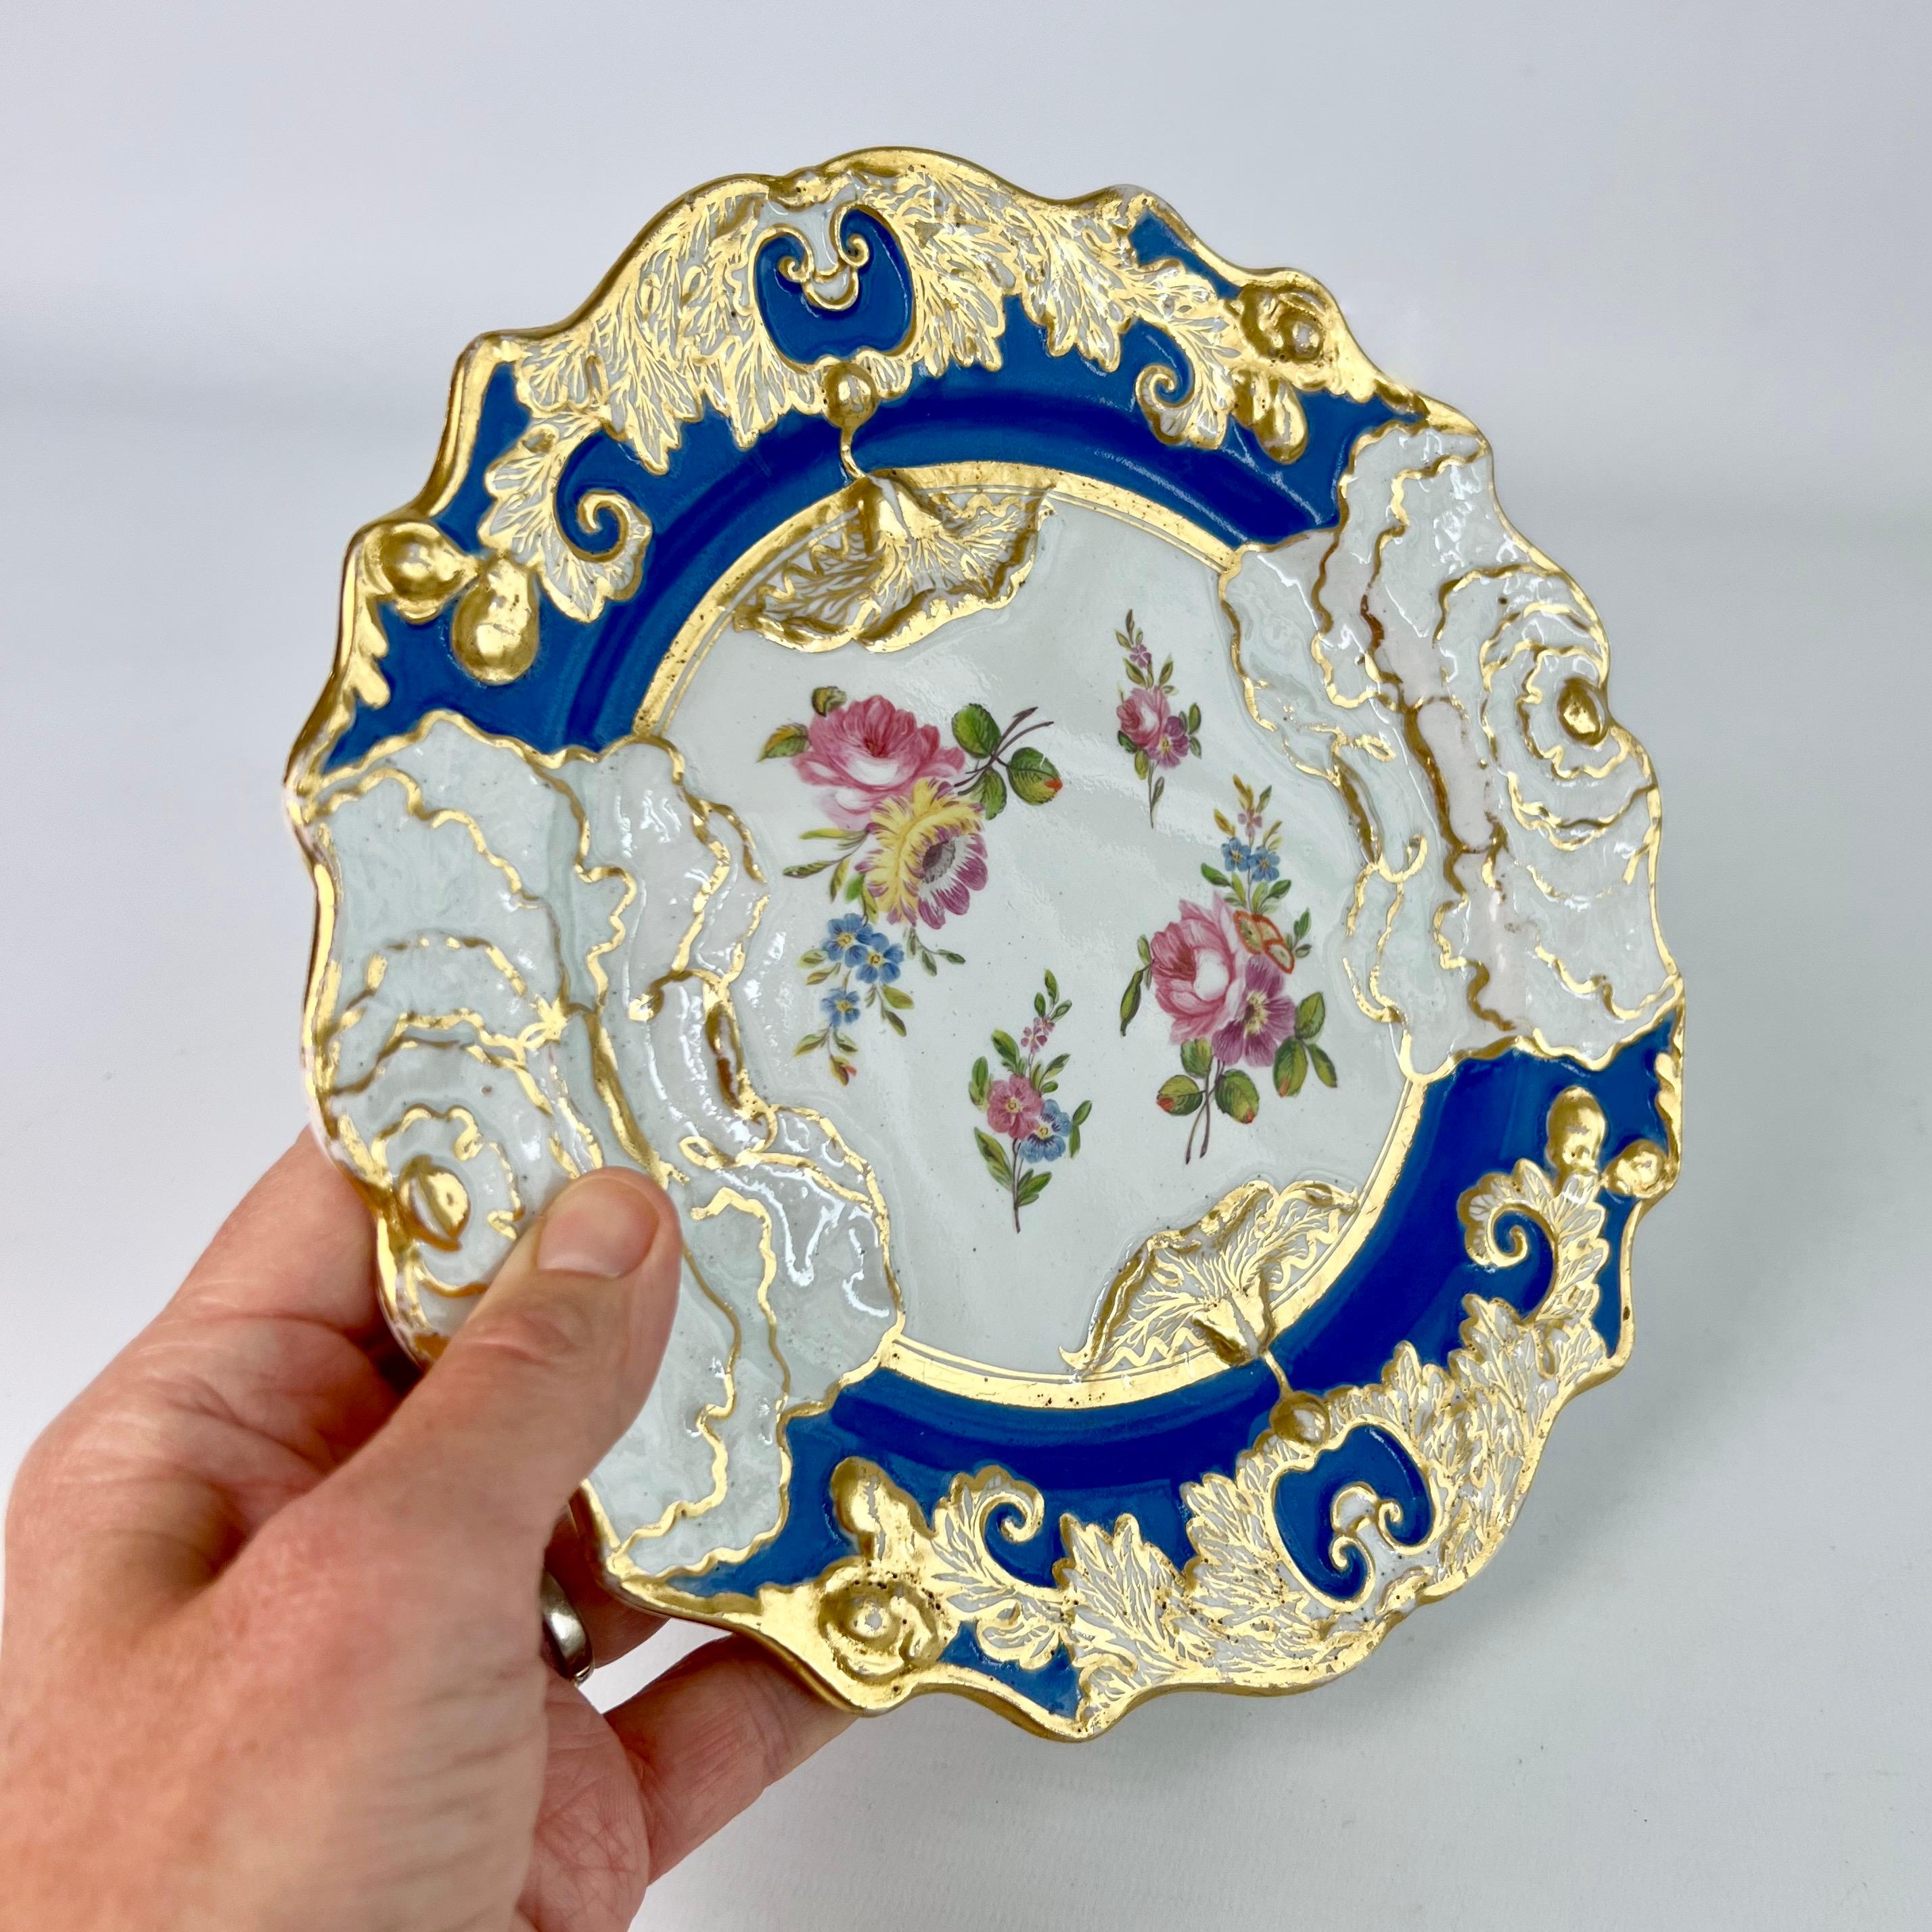 Il s'agit d'une belle assiette à dessert fabriquée par Mason vers 1840. L'assiette a la merveilleuse forme d'un chou avec un fond bleu royal brillant et de belles gerbes de fleurs peintes à la main.

Miles Mason est l'un des premiers de la